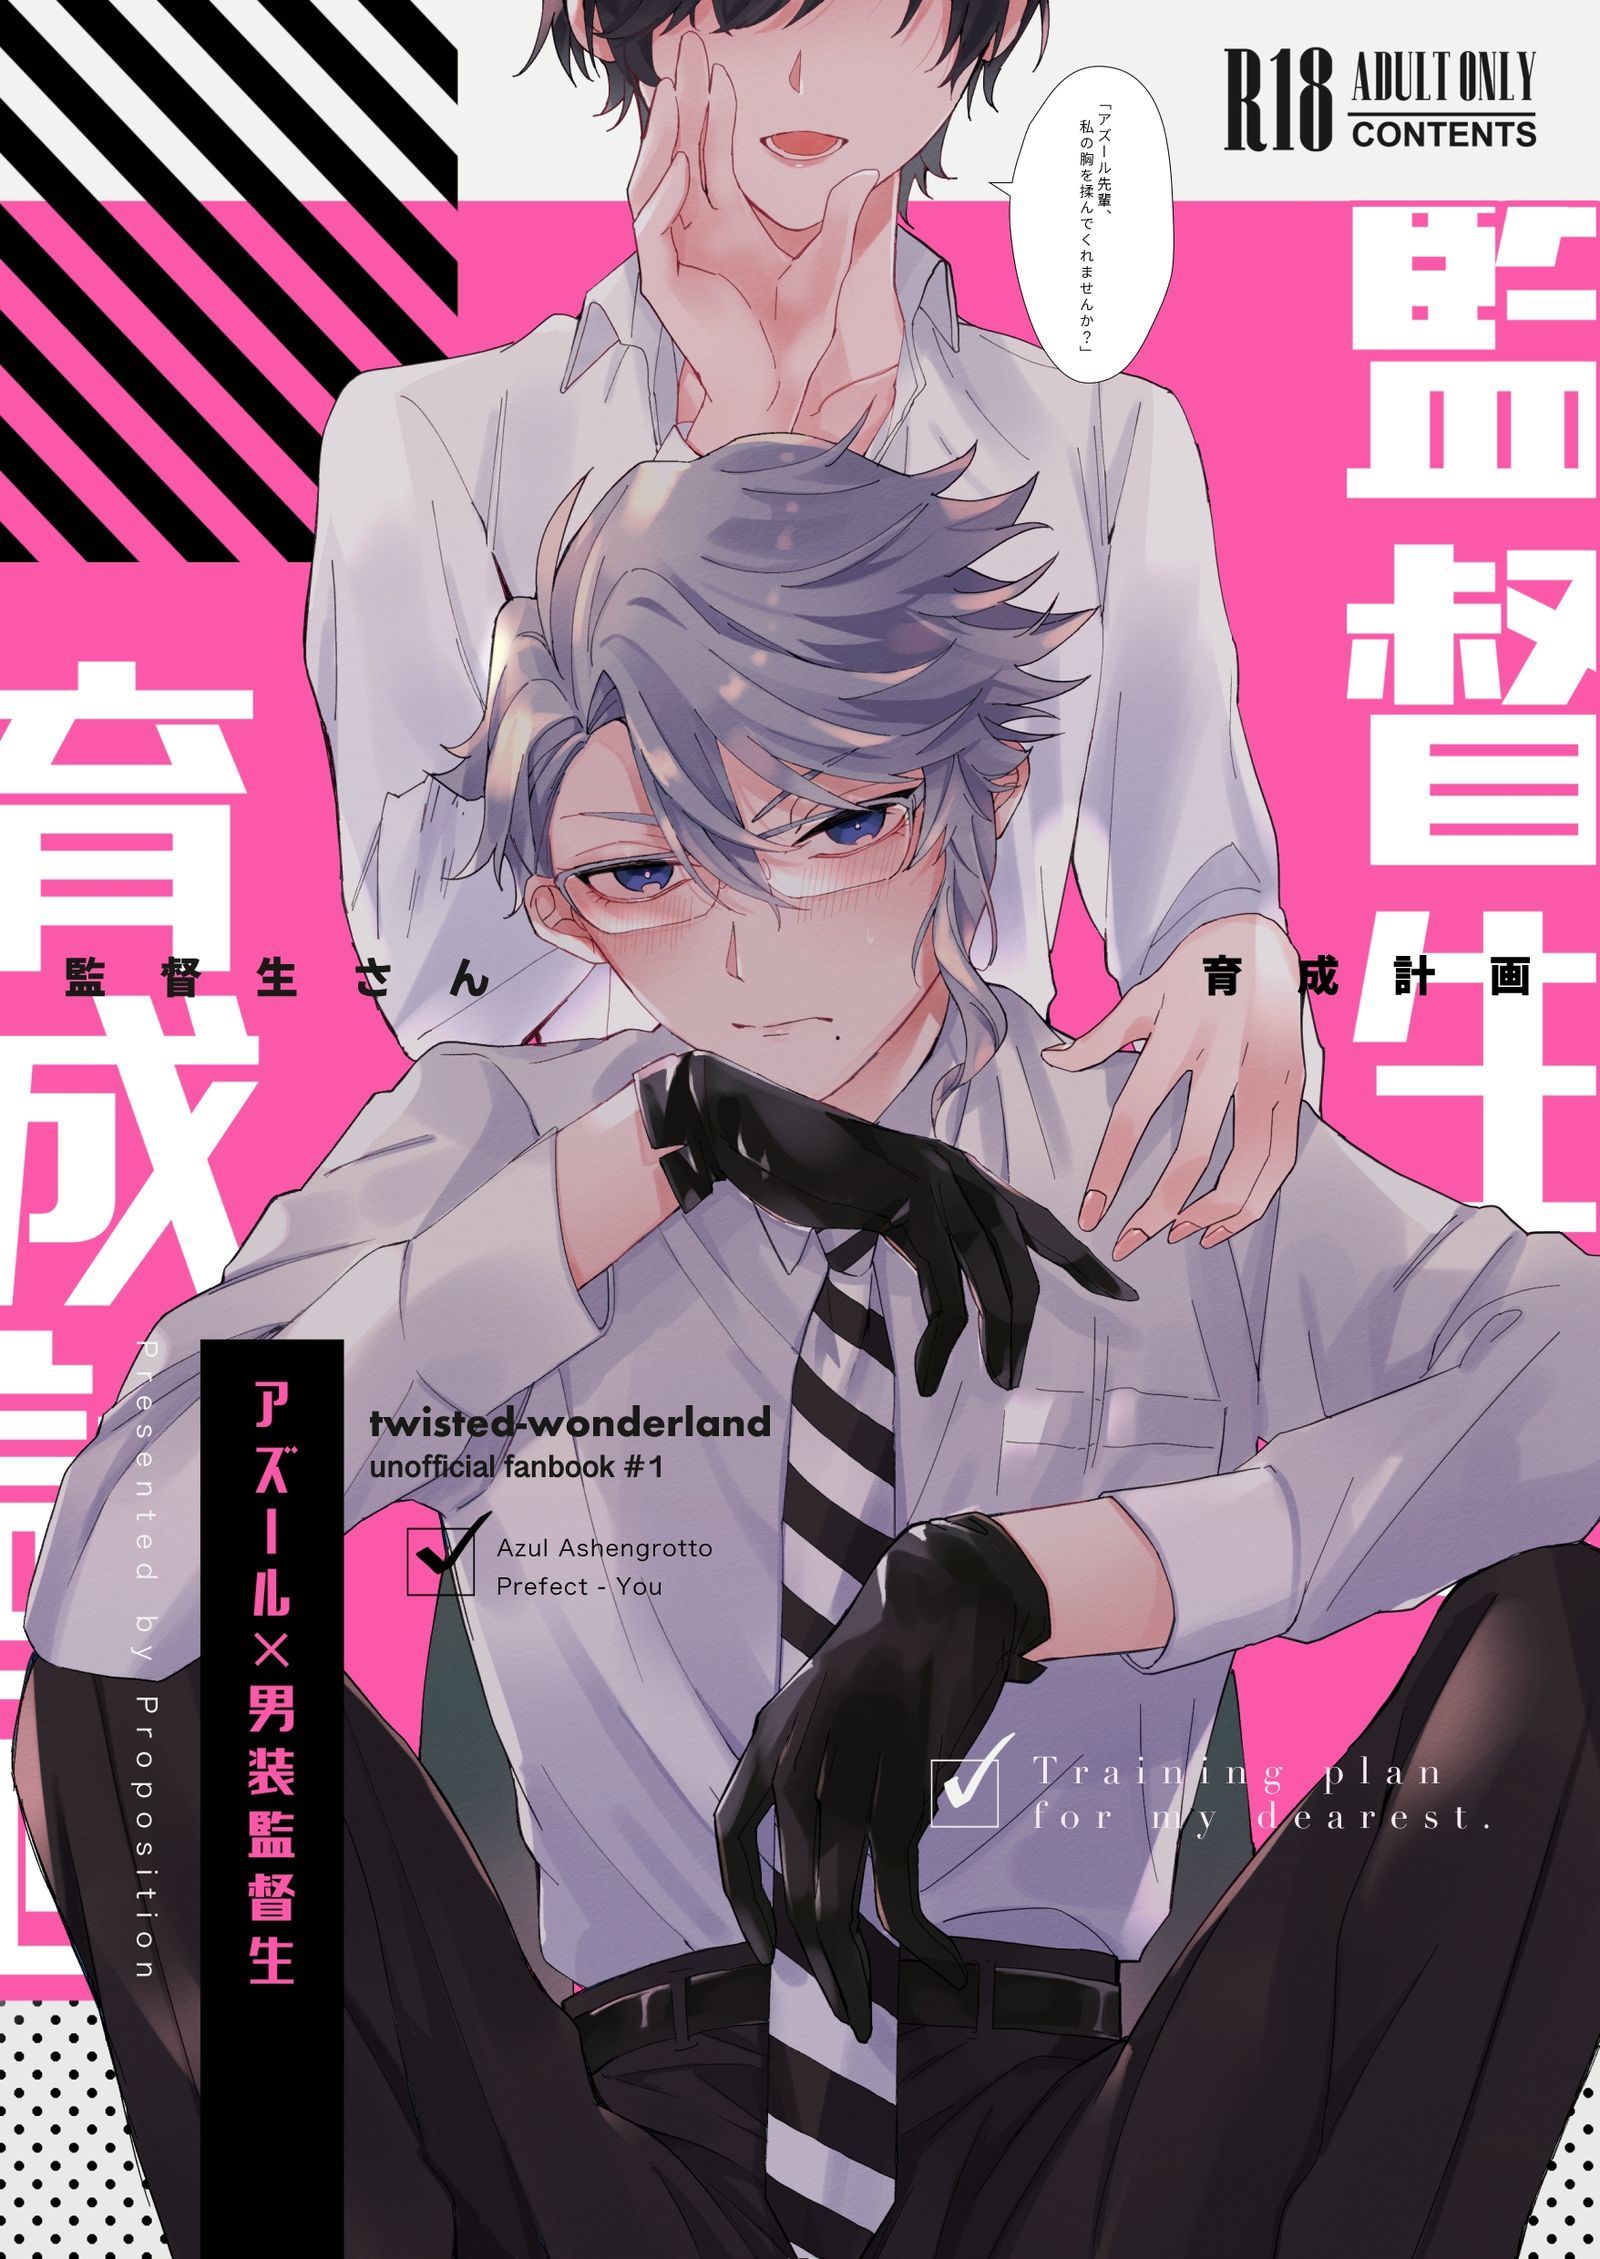 The Proposition Anime Porn - ace trappola - Hentai Manga, Doujins, XXX & Anime Porn